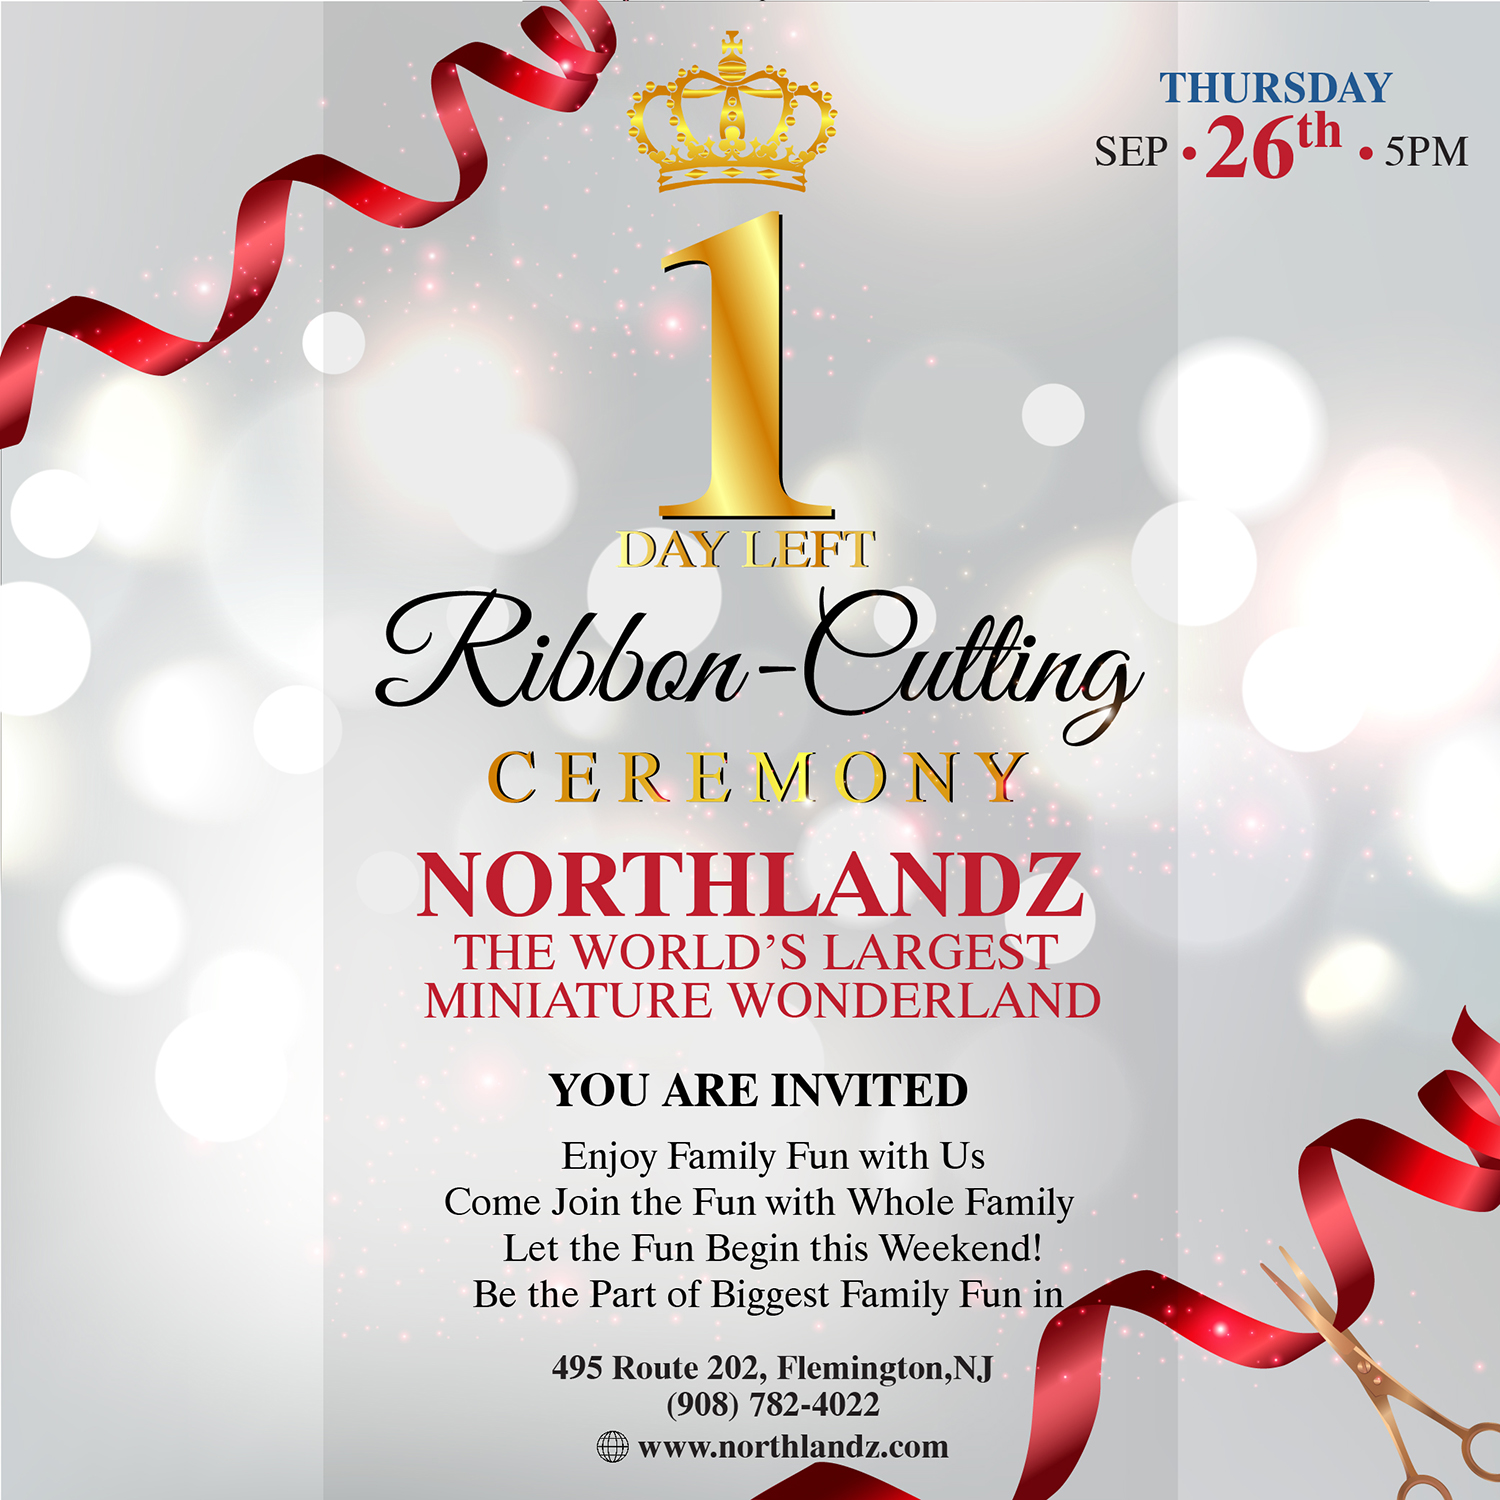 Northlandz Ribbon Cutting Day Celebration